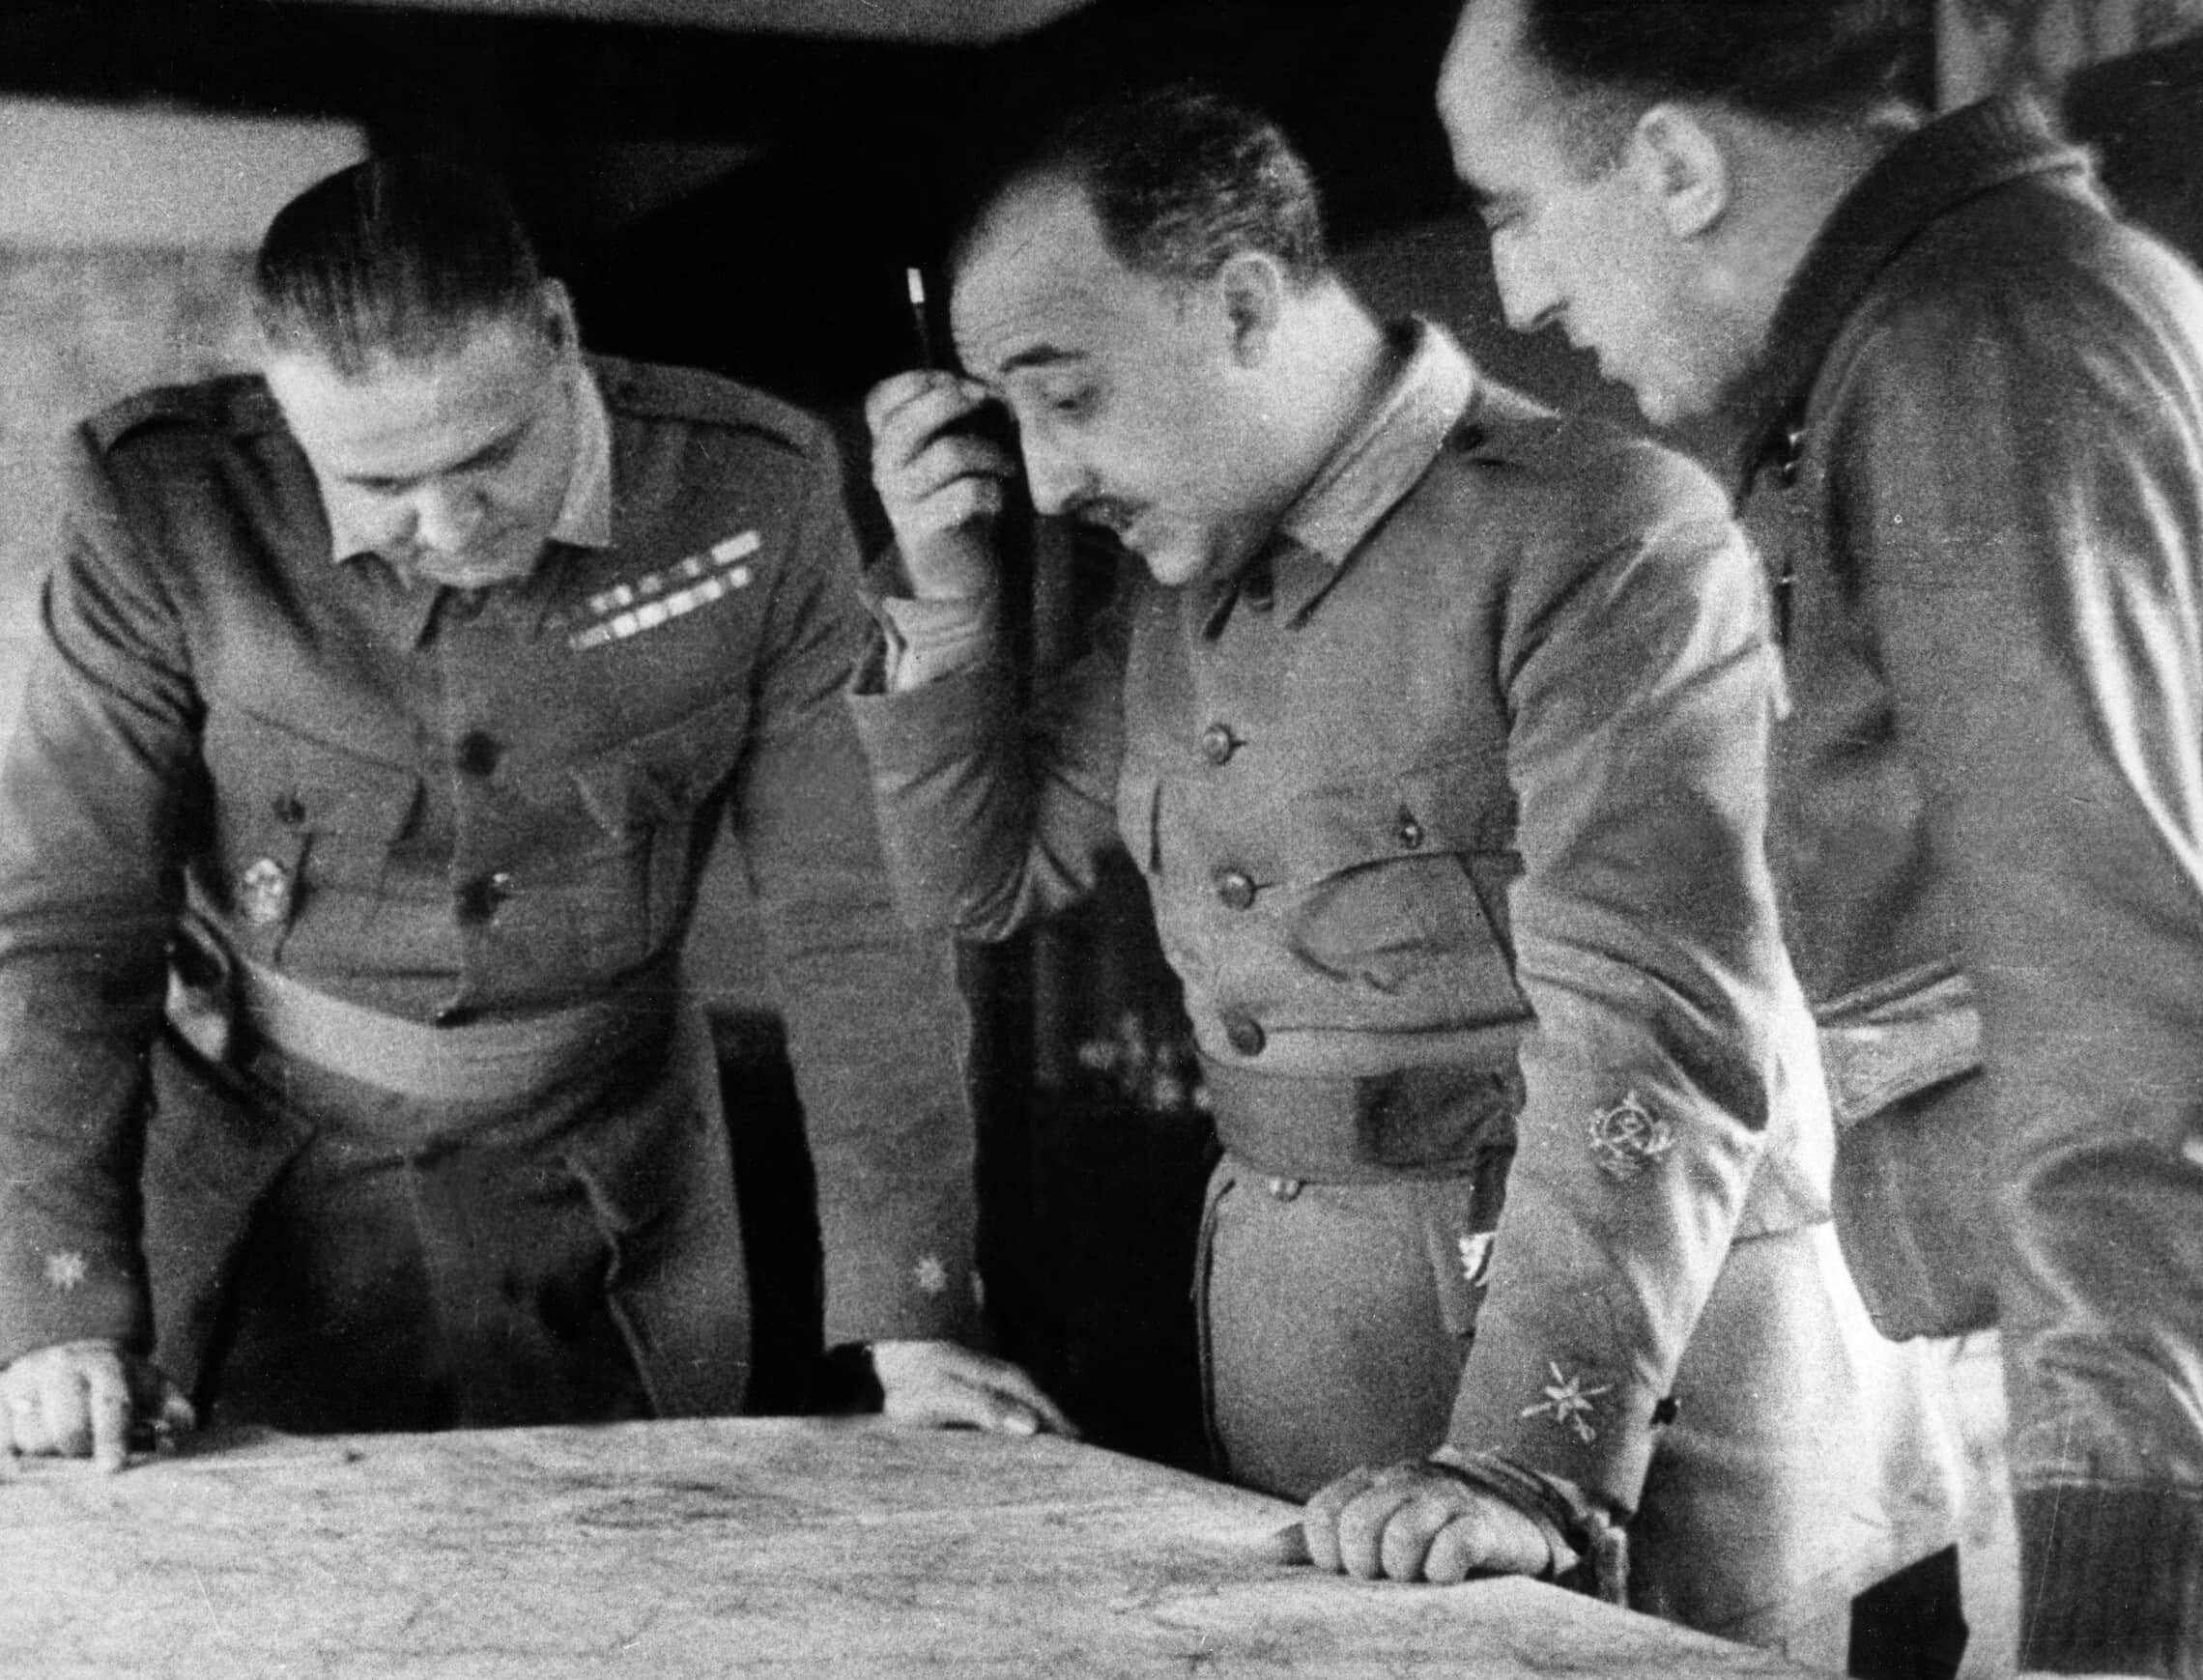 הגנרל פרנקו מביט במפה במהלך מלחמת האזרחים בספרד בסוף שנות ה-30 (צילום: AFP)